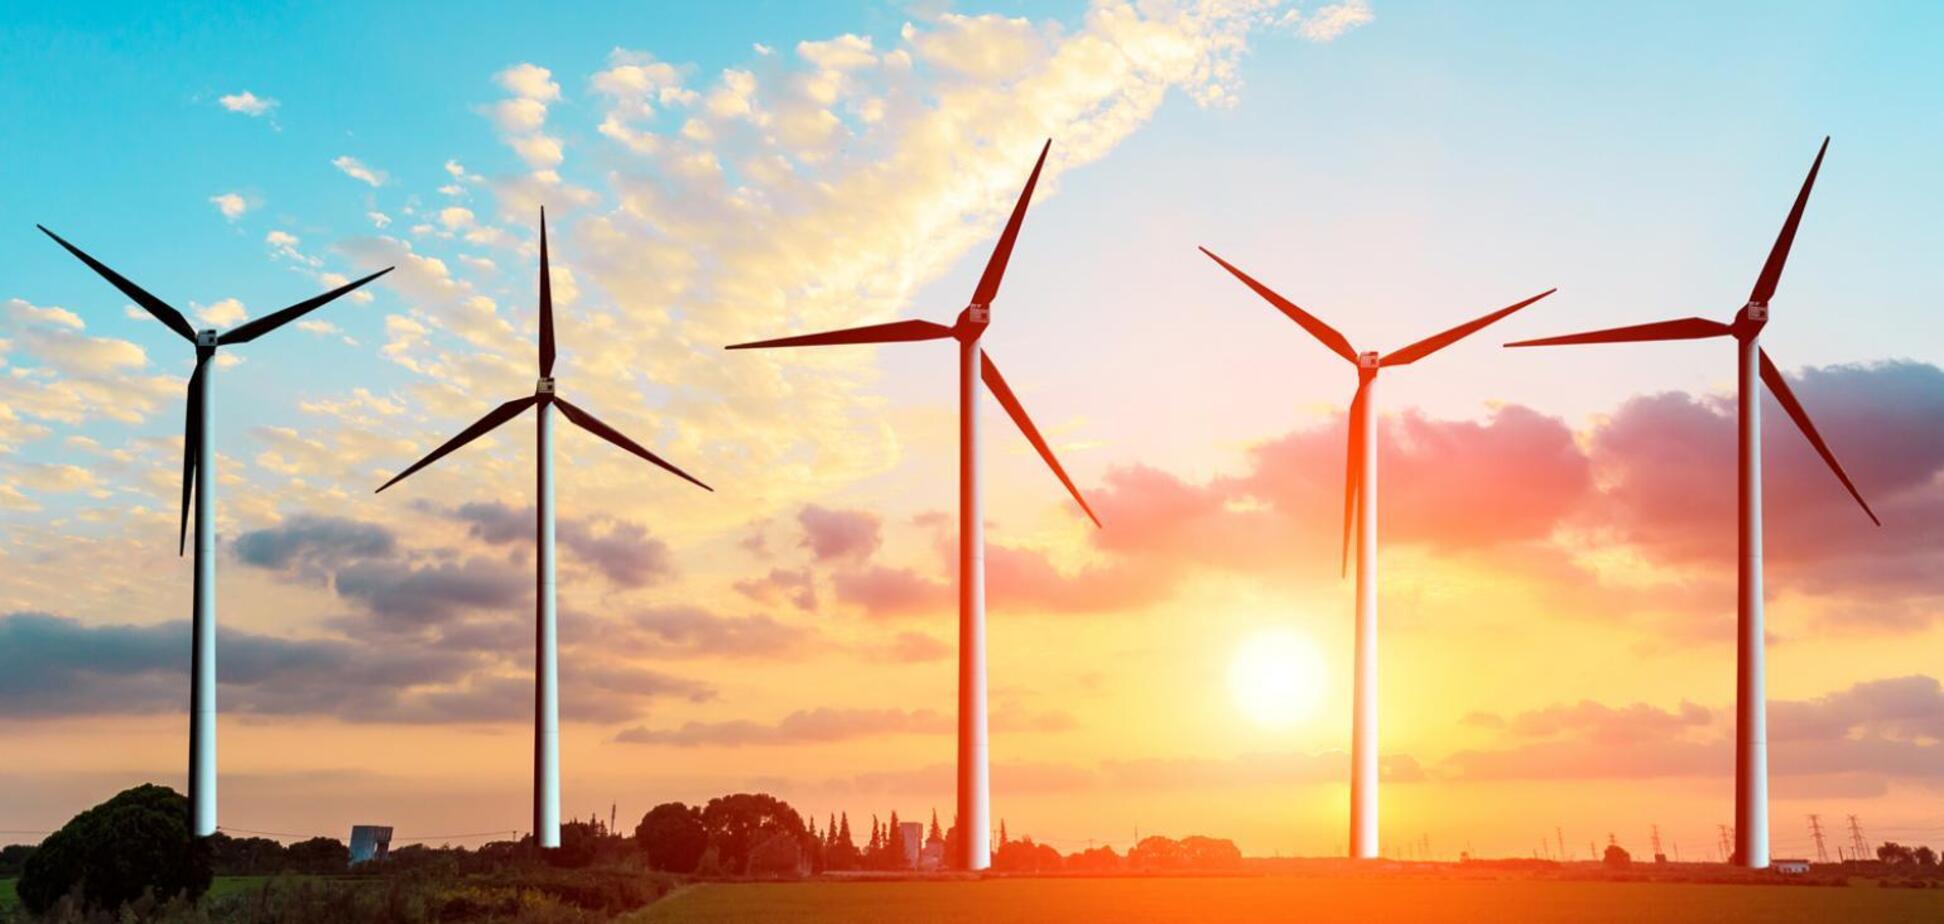 АТП призвала Верховную Раду поддержать инвесторов в достройке ветроэлектростанций